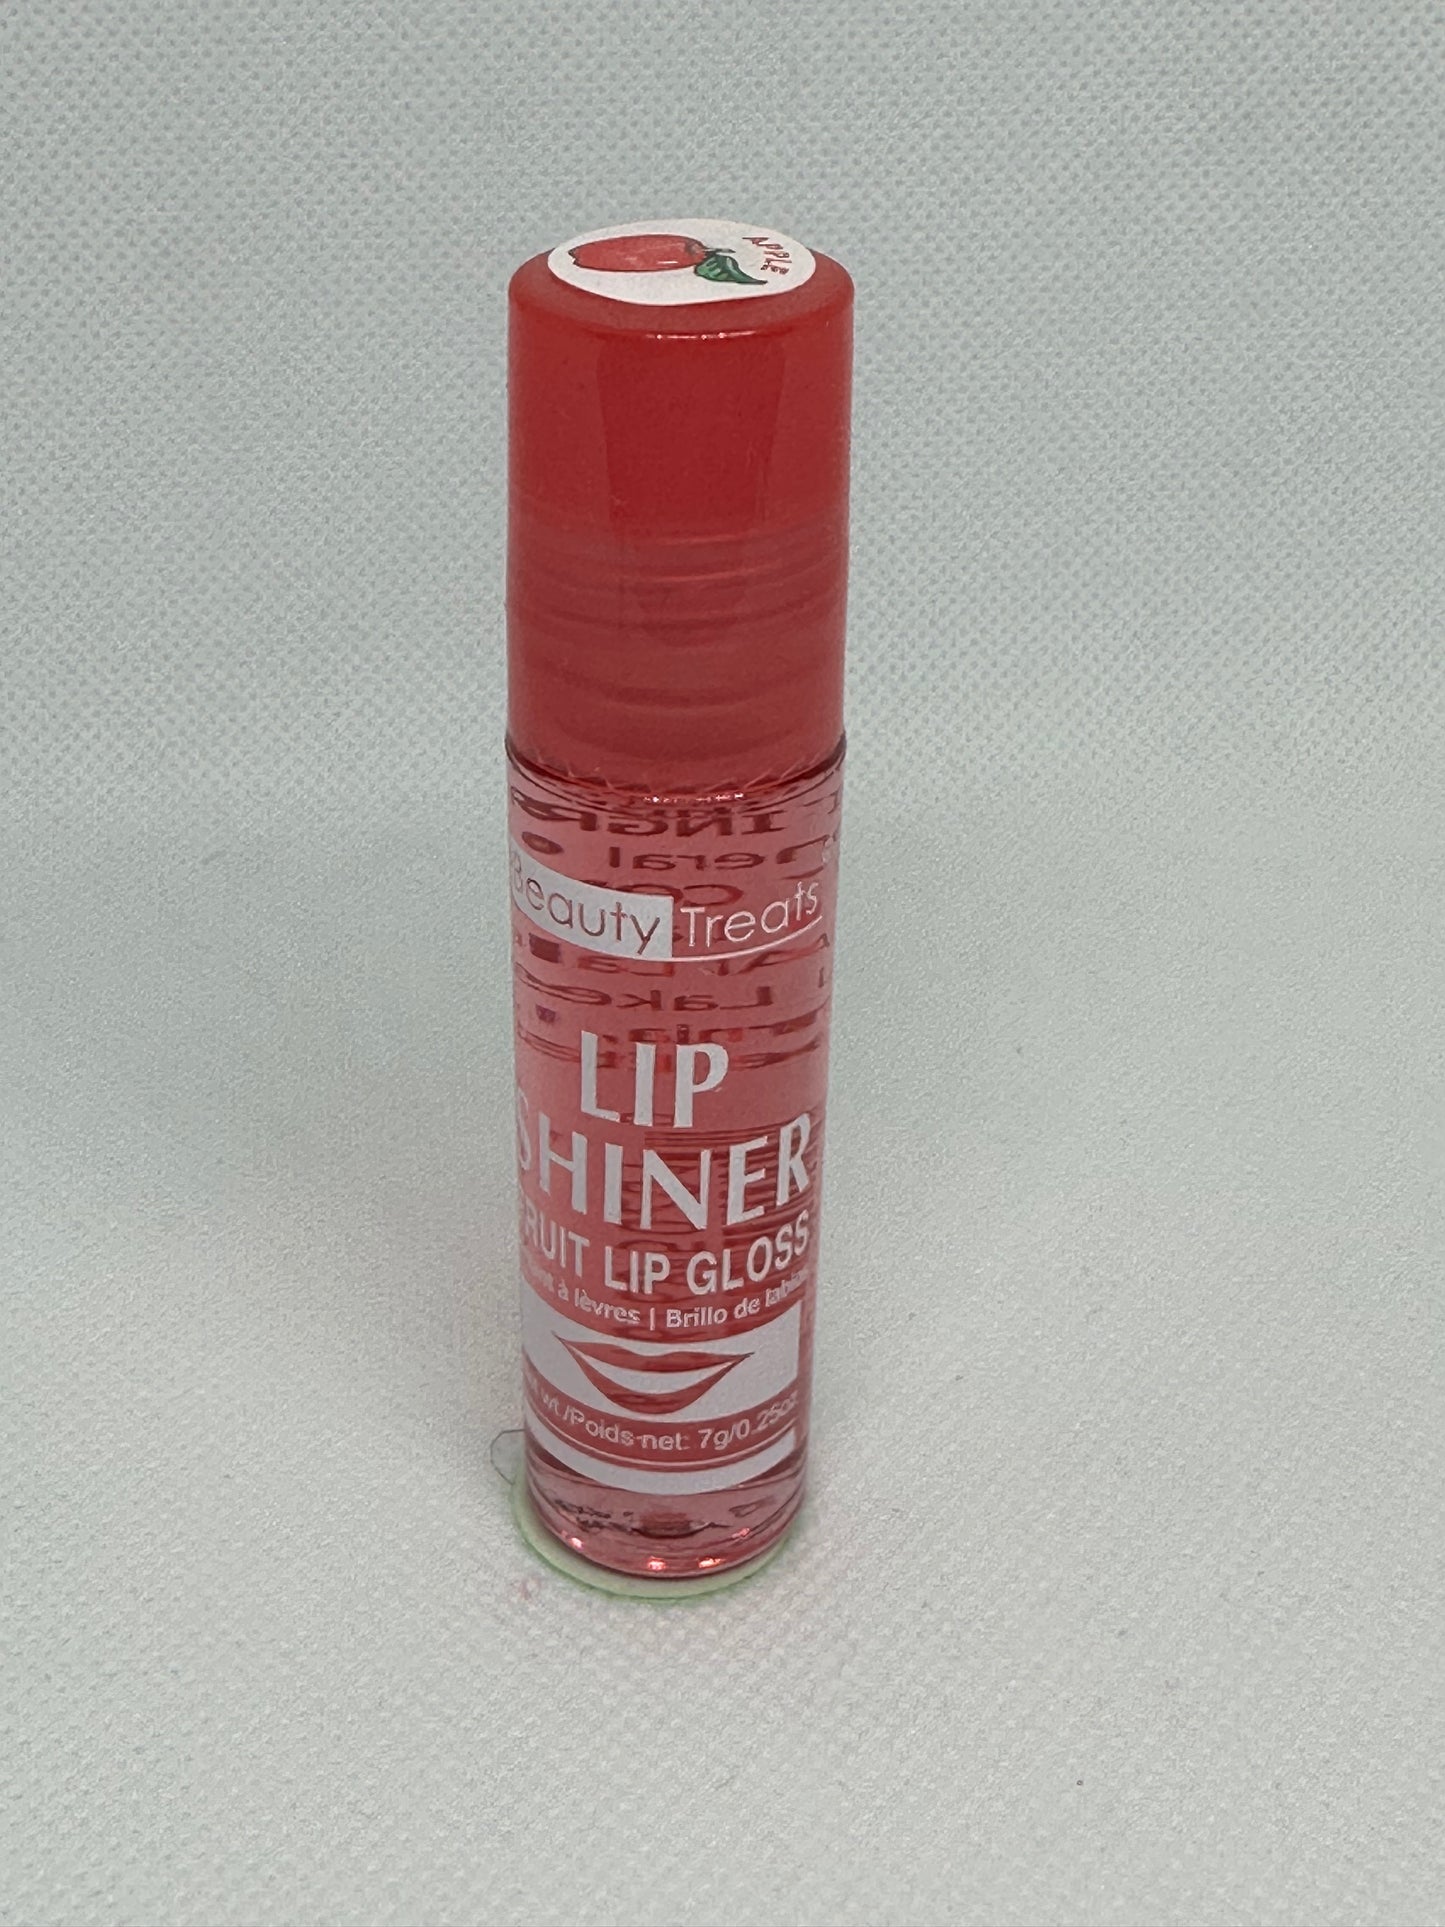 Lip Shiner(fruit Lip Gloss )